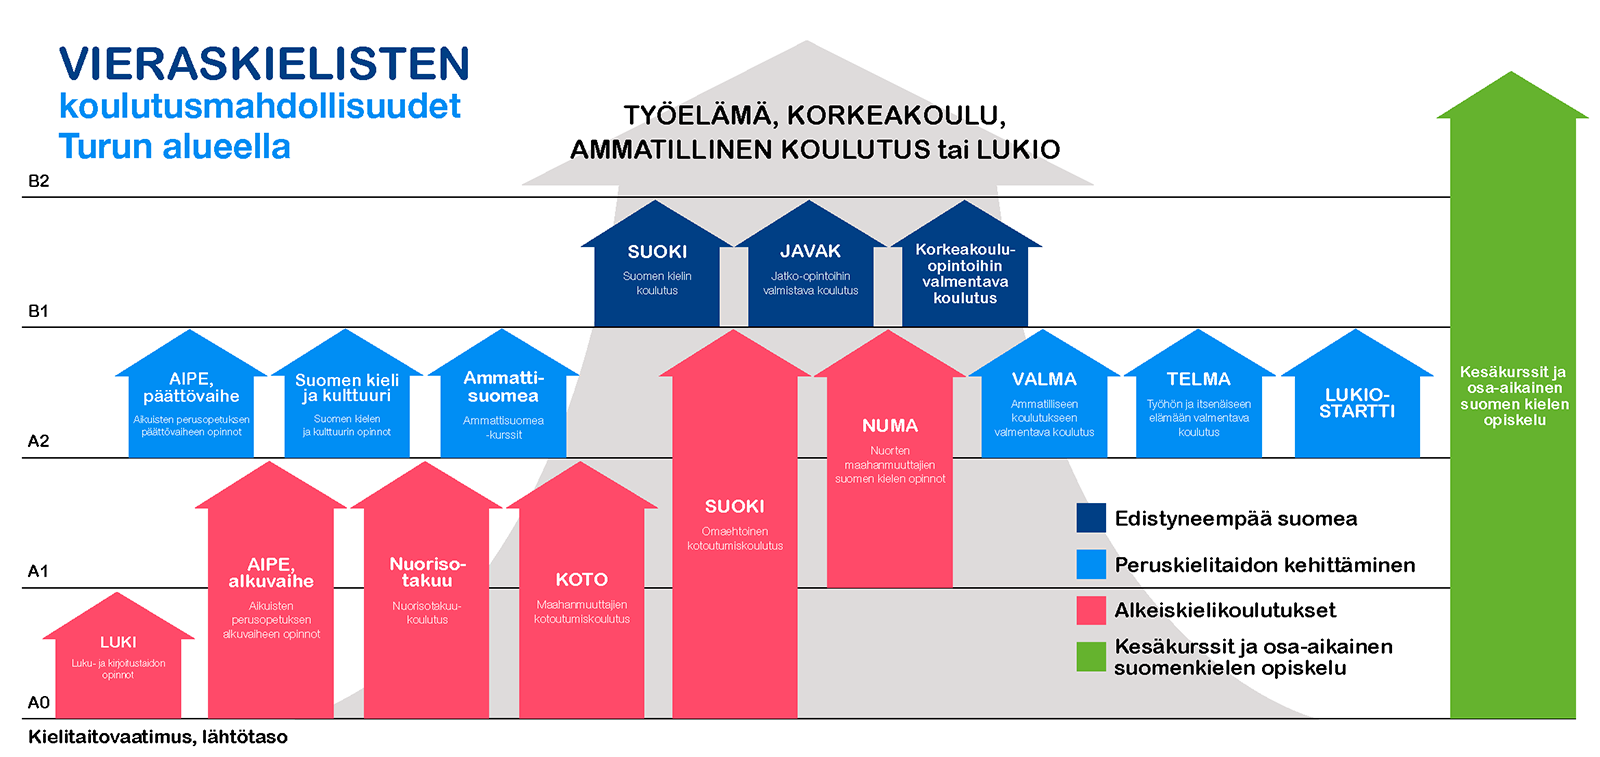 Infograafi eri tutkintojen suomenkielivaatimuksista. Löydät lisätietoa kielivaatimuksista, kun luet sivua alaspäin.